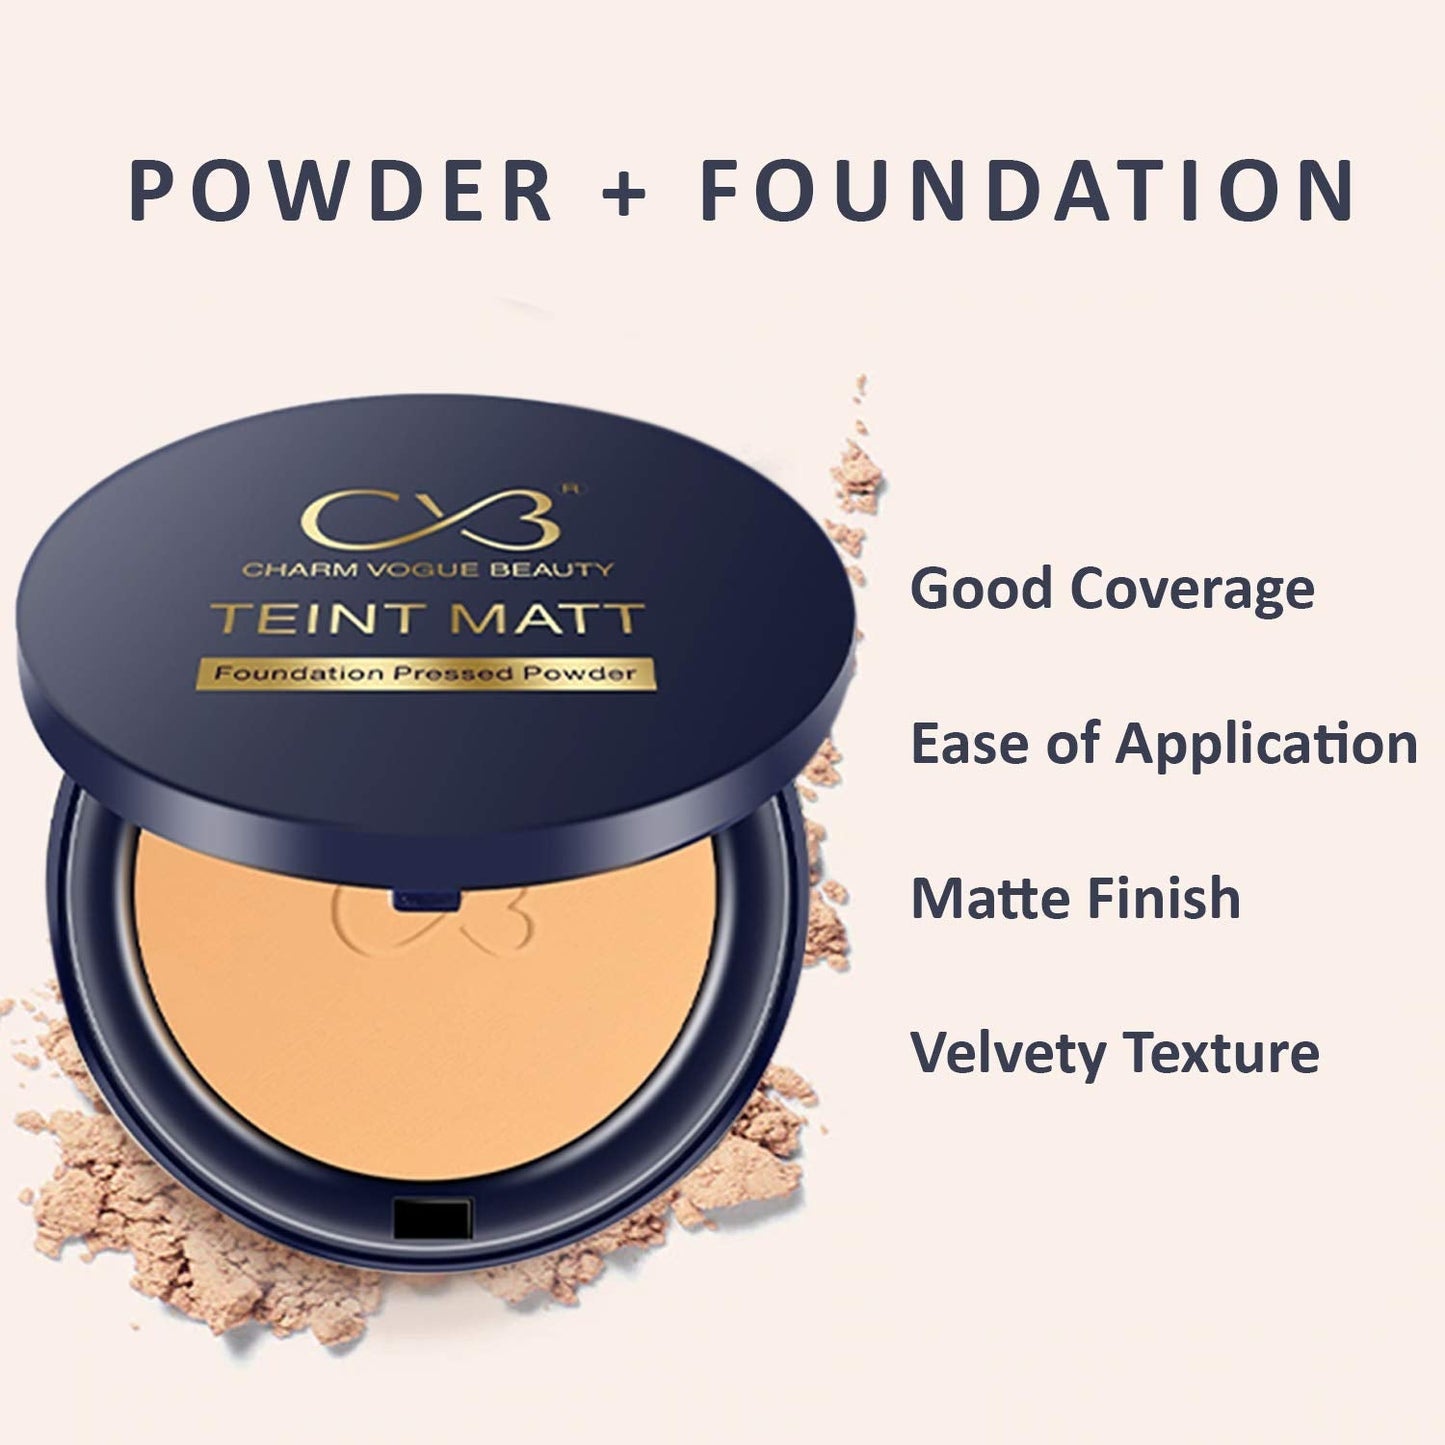 Teint Matt Foundation Pressed Powder